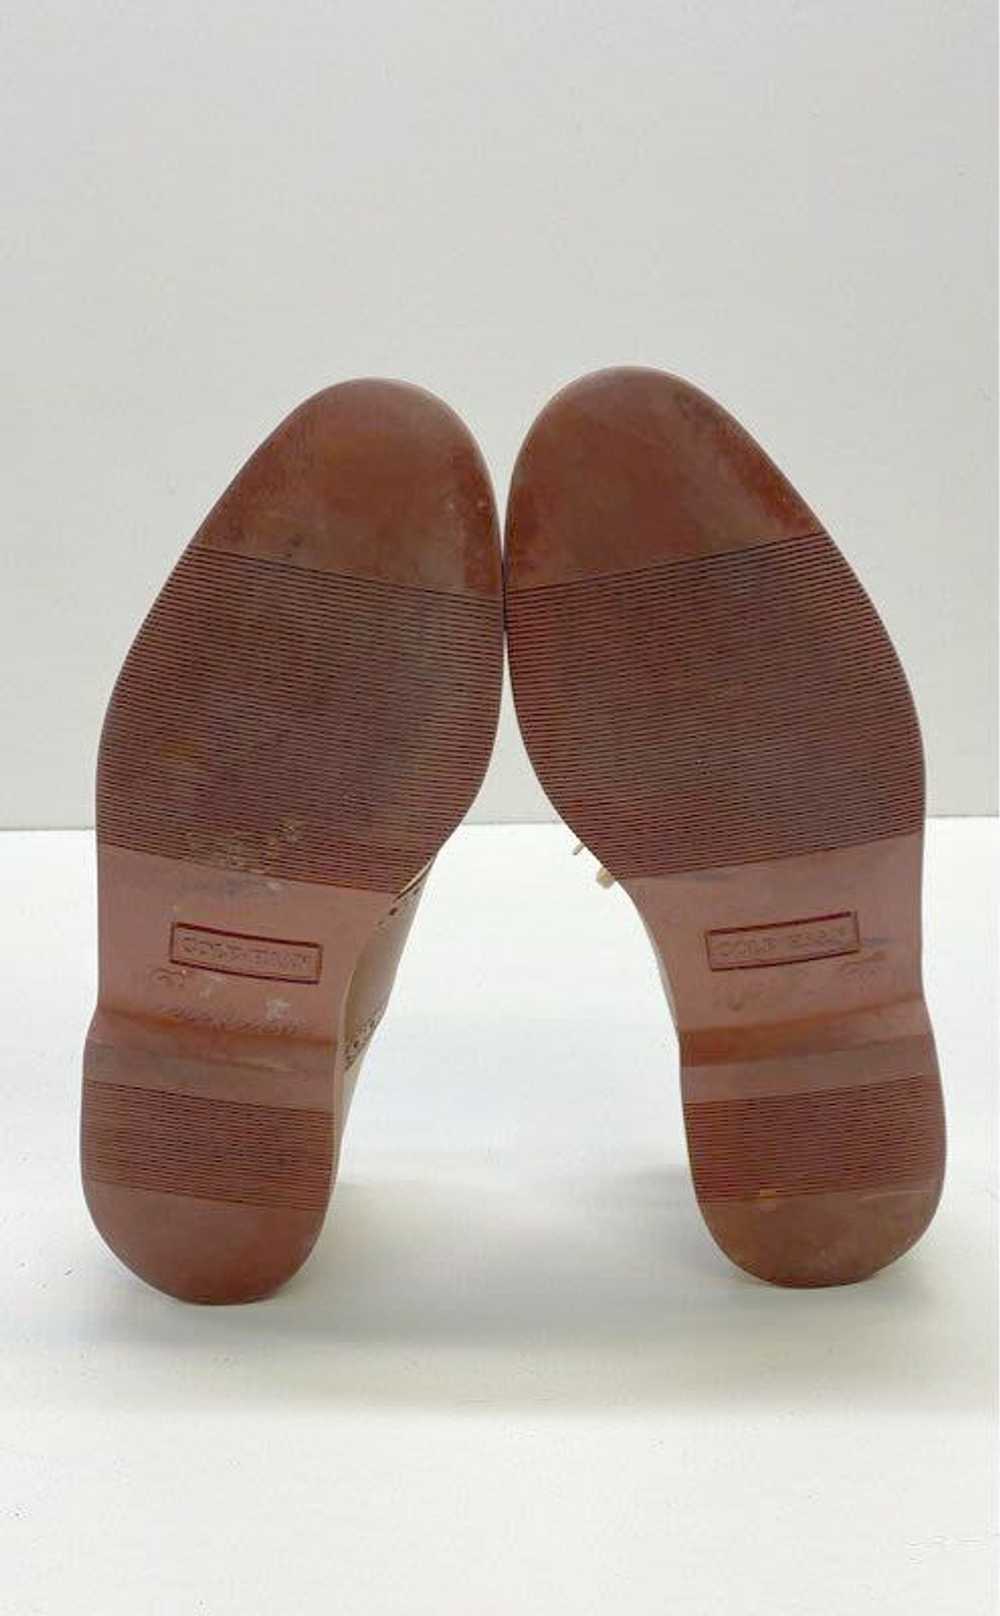 Cole Haan Men's Brown/Tan Saddle Shoes Sz. 8.5 - image 6